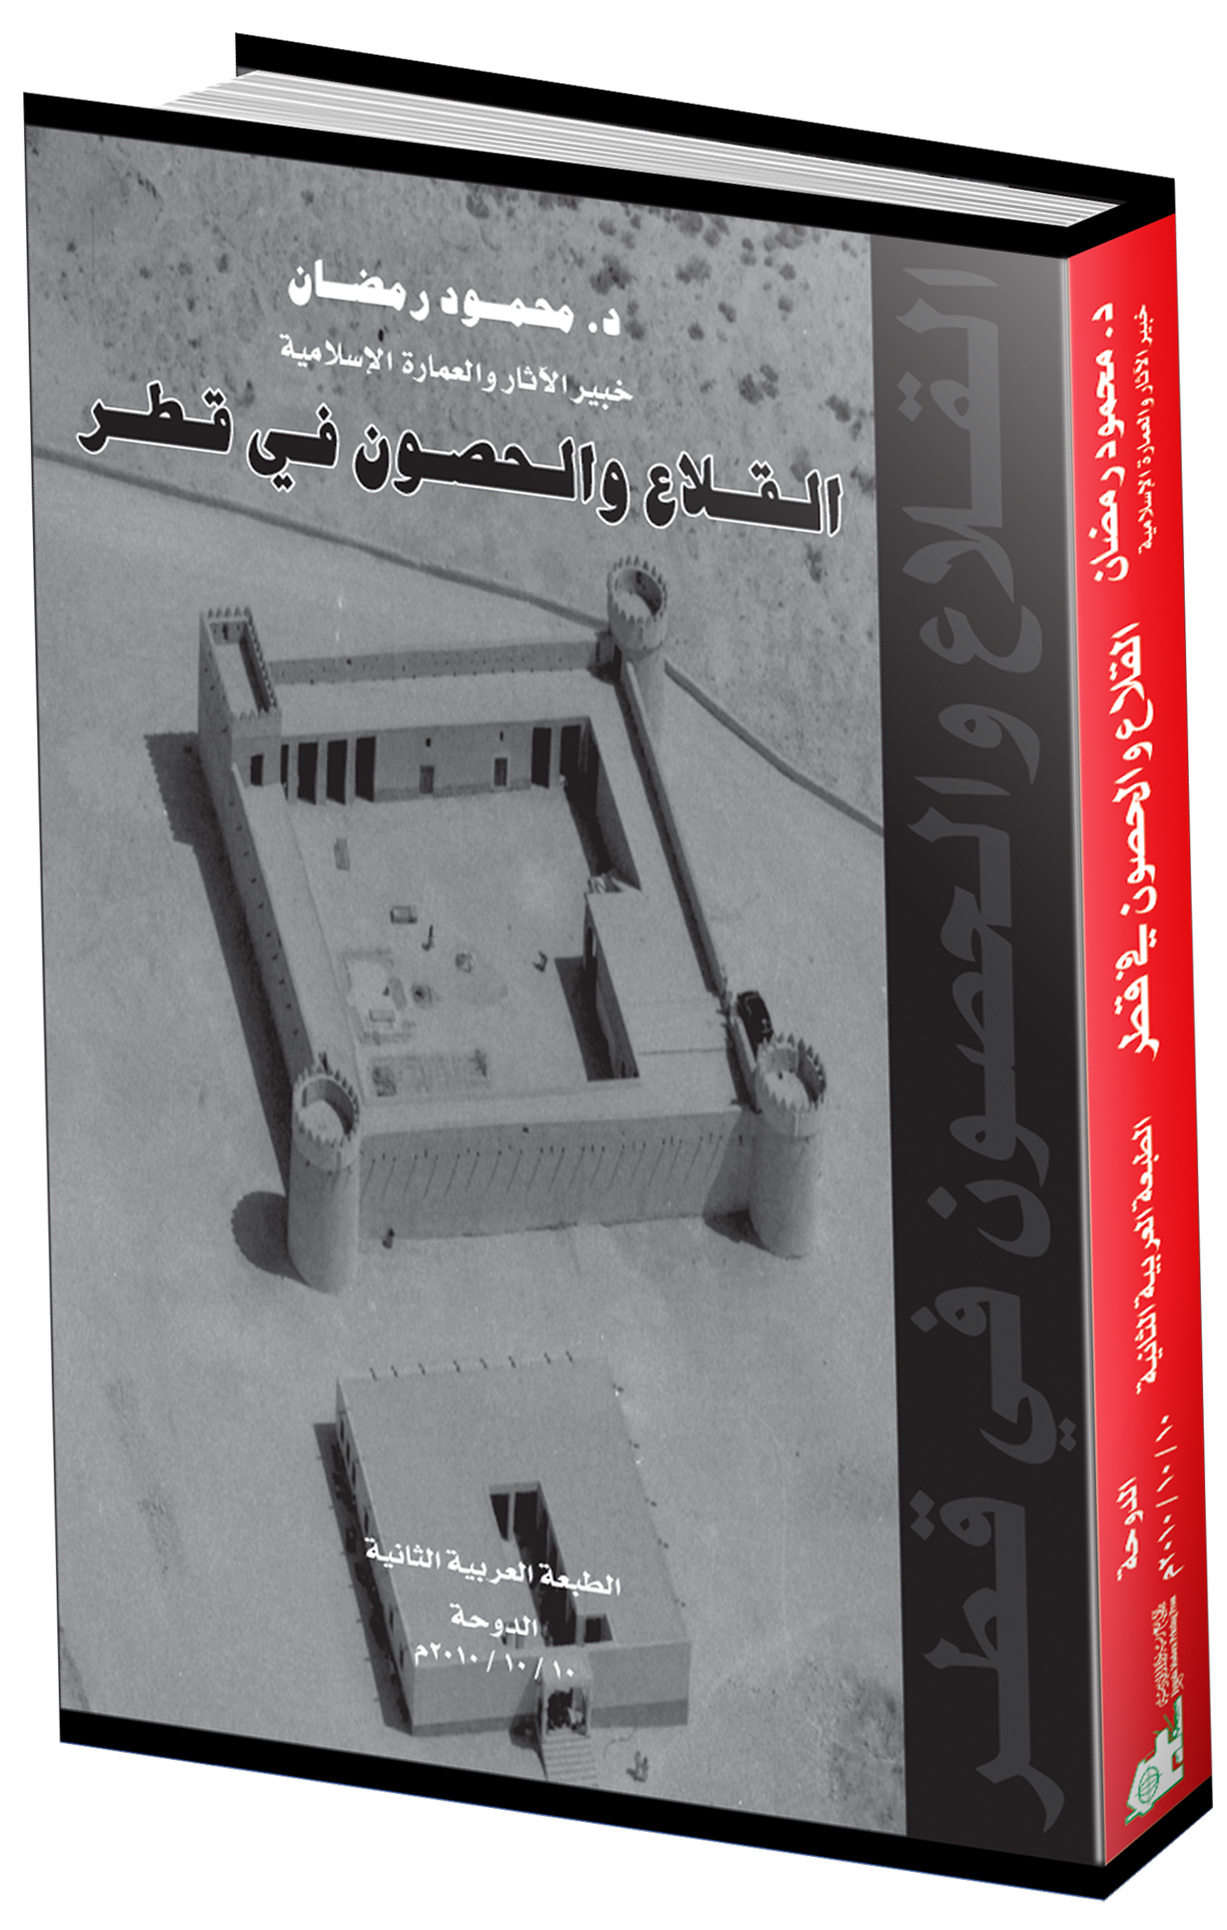  - غلاف كتاب القلاع والحصون في قطر - الطبعة العربية الثانية أكتوبر 2010م